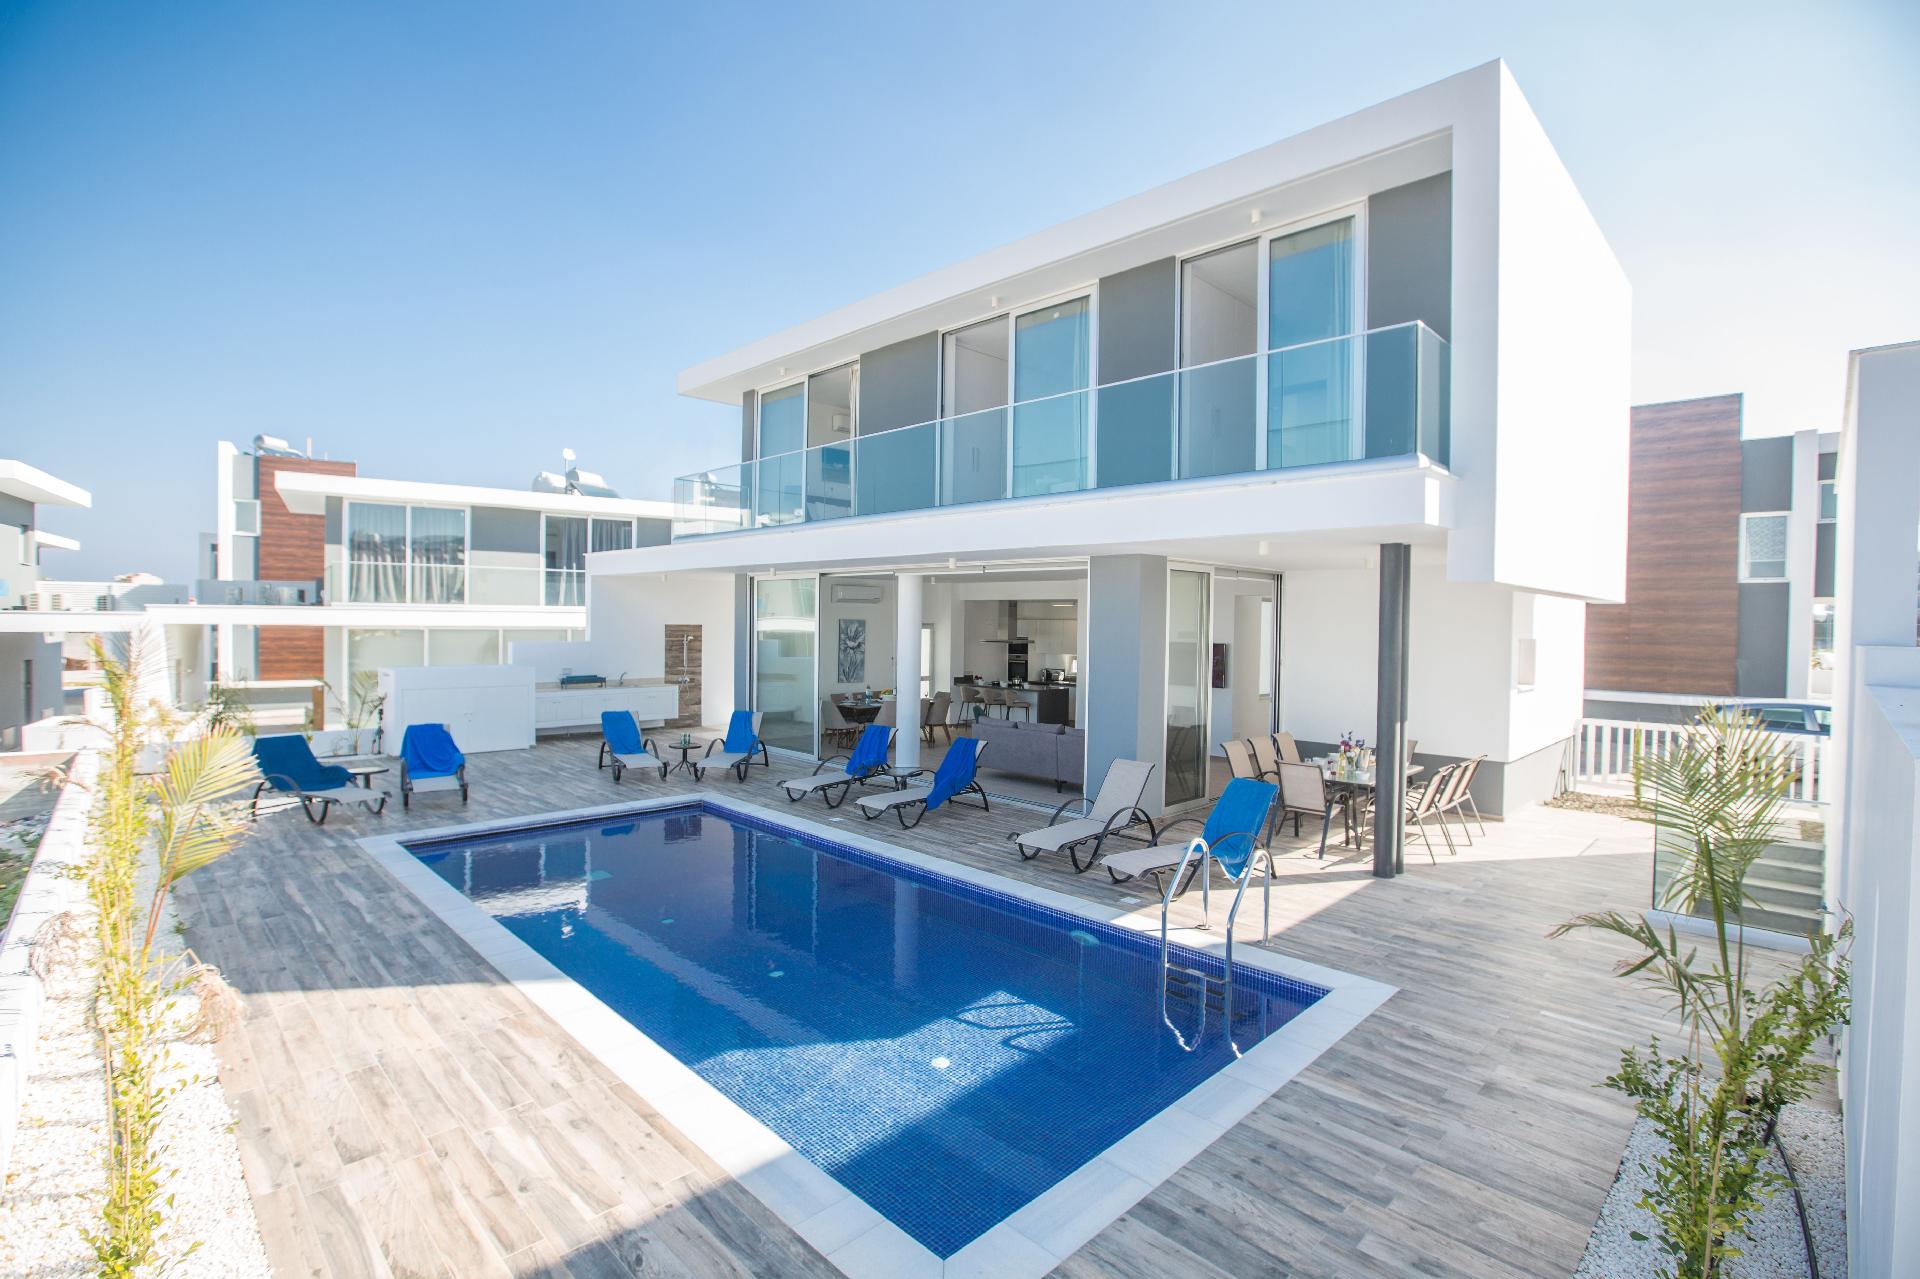 Ferienhaus mit Privatpool für 11 Personen ca. Ferienhaus in Zypern